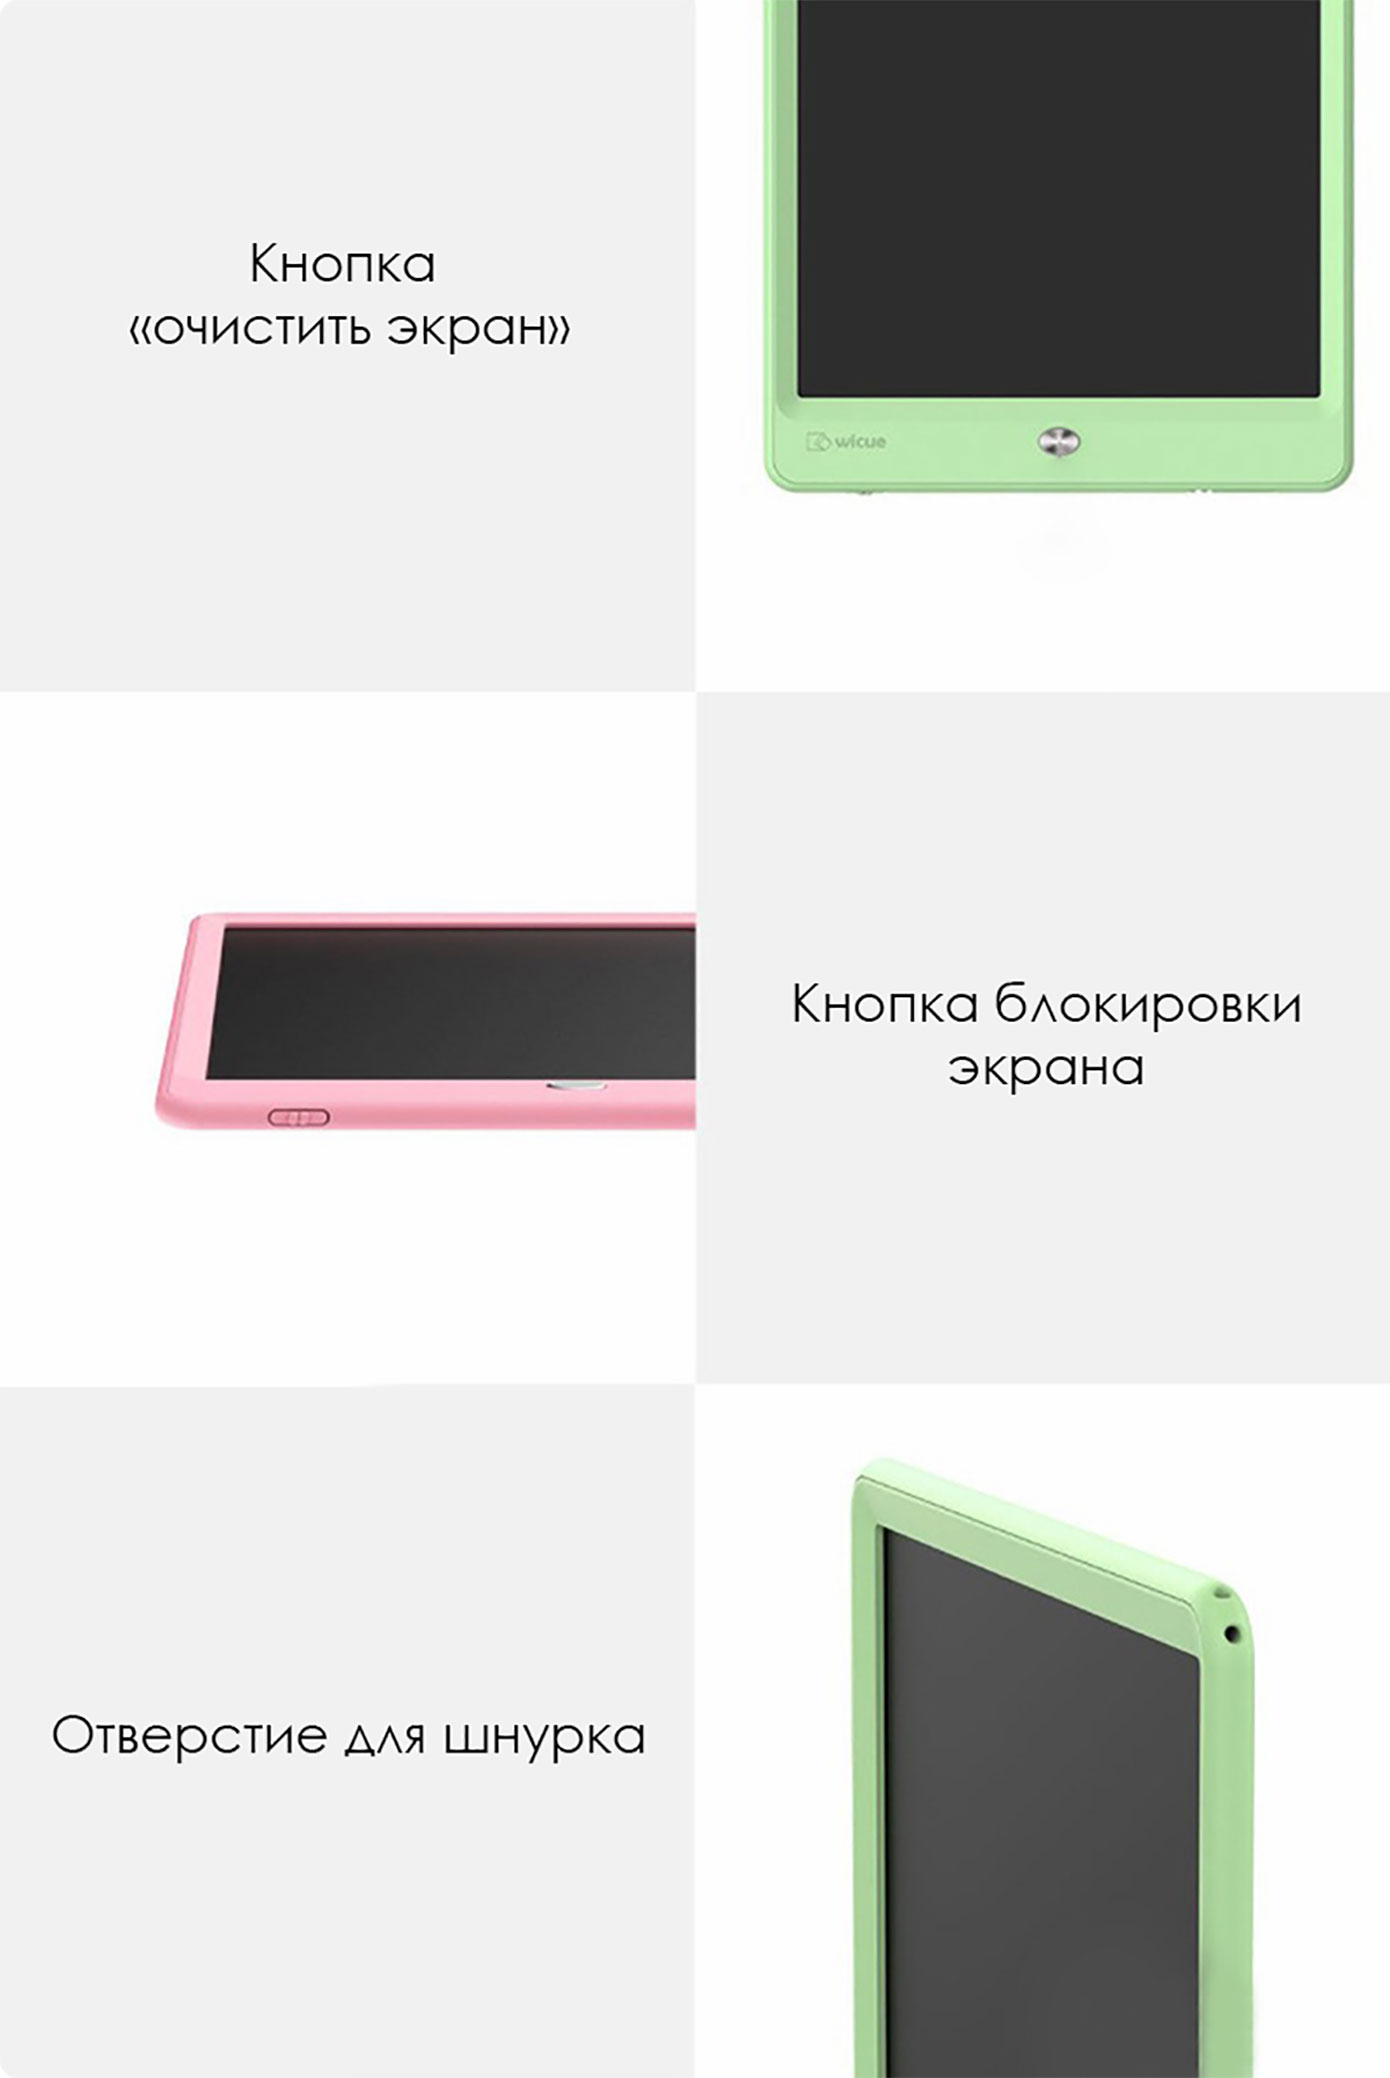 Opisanie Graficheskij Planshet Dlya Risovaniya Xiaomi Wicue 10 05